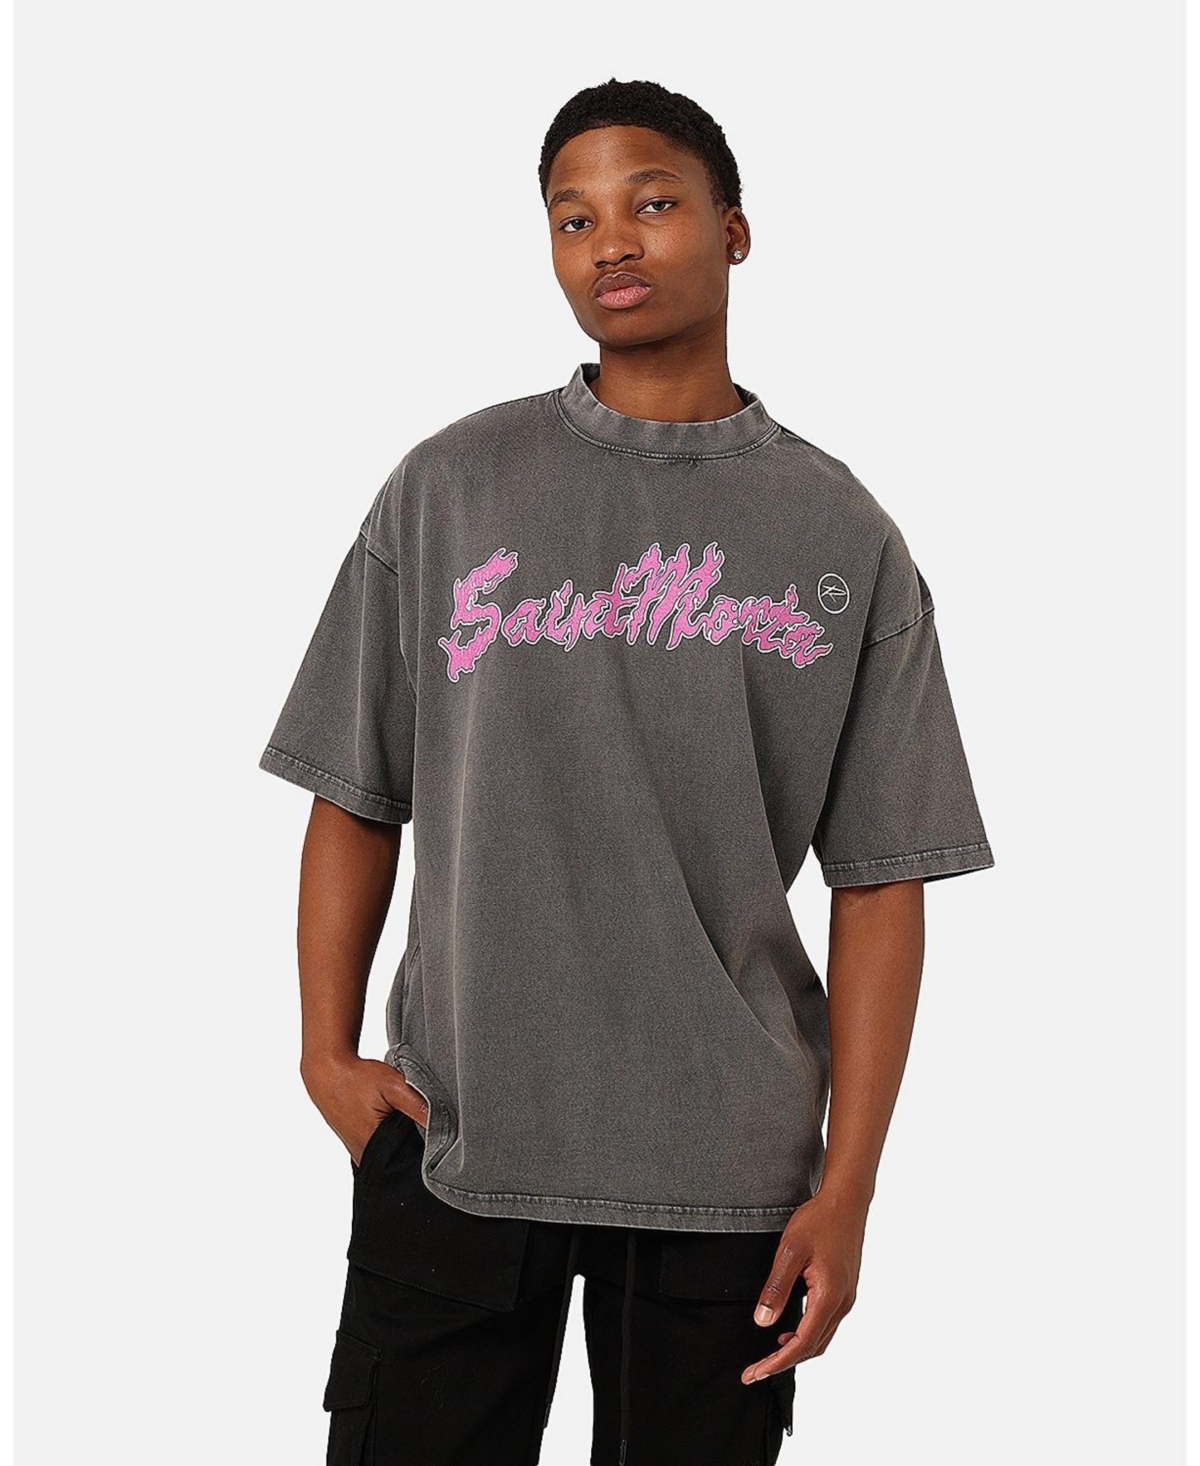 Men's Firestarter T-Shirt - Washed charcoal